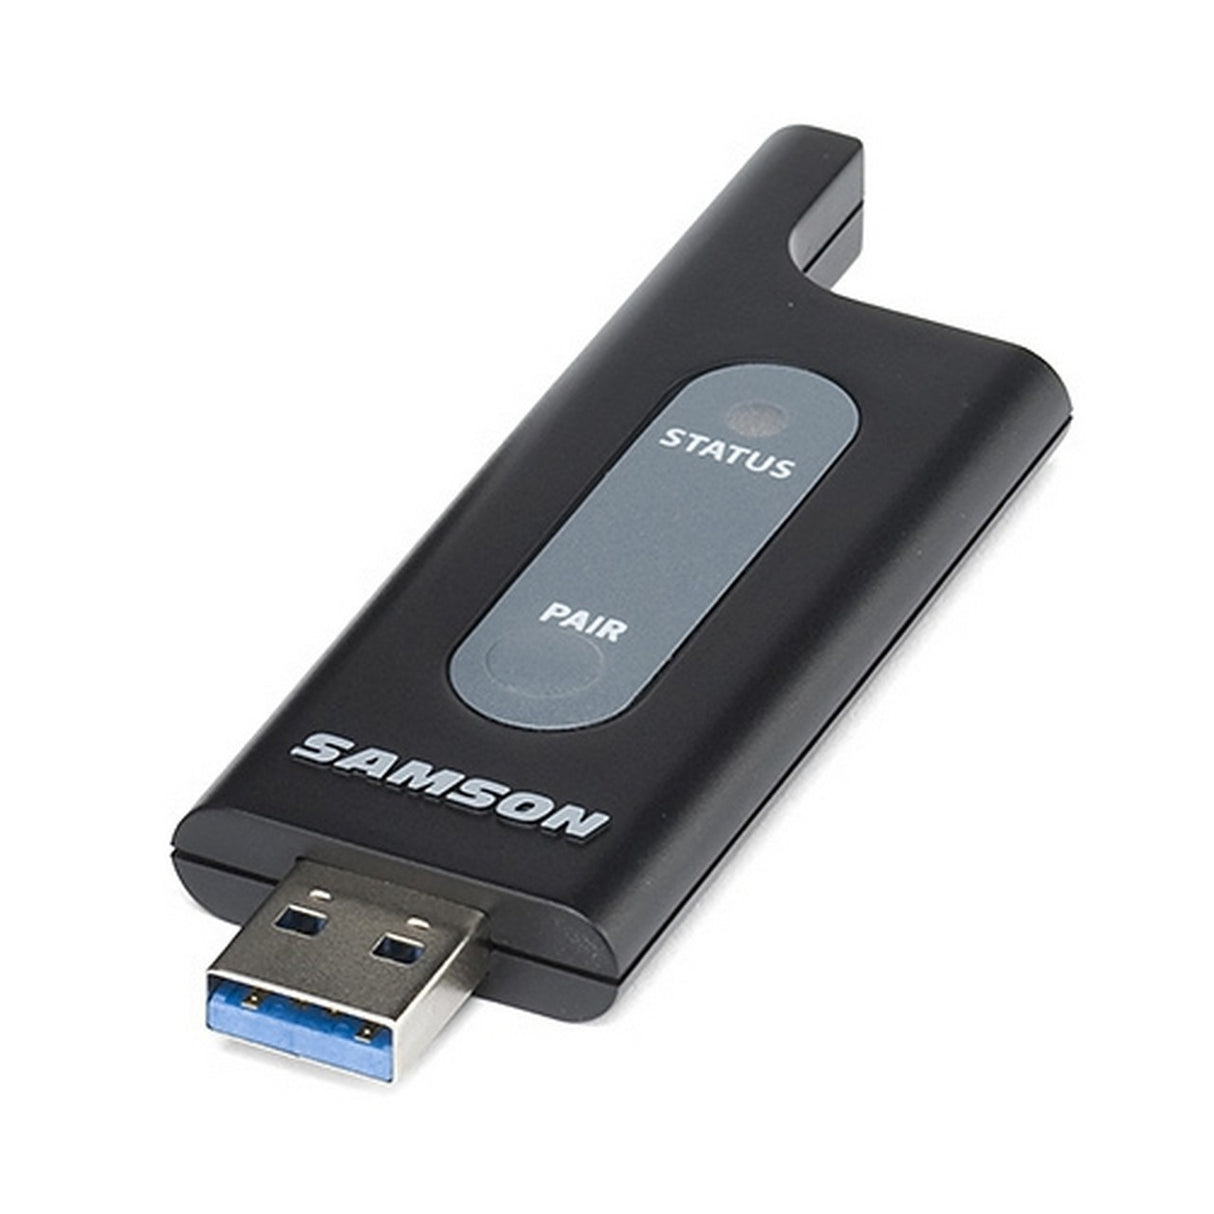 Samson RXD1 Wireless USB Receiver for XPD1/X1U